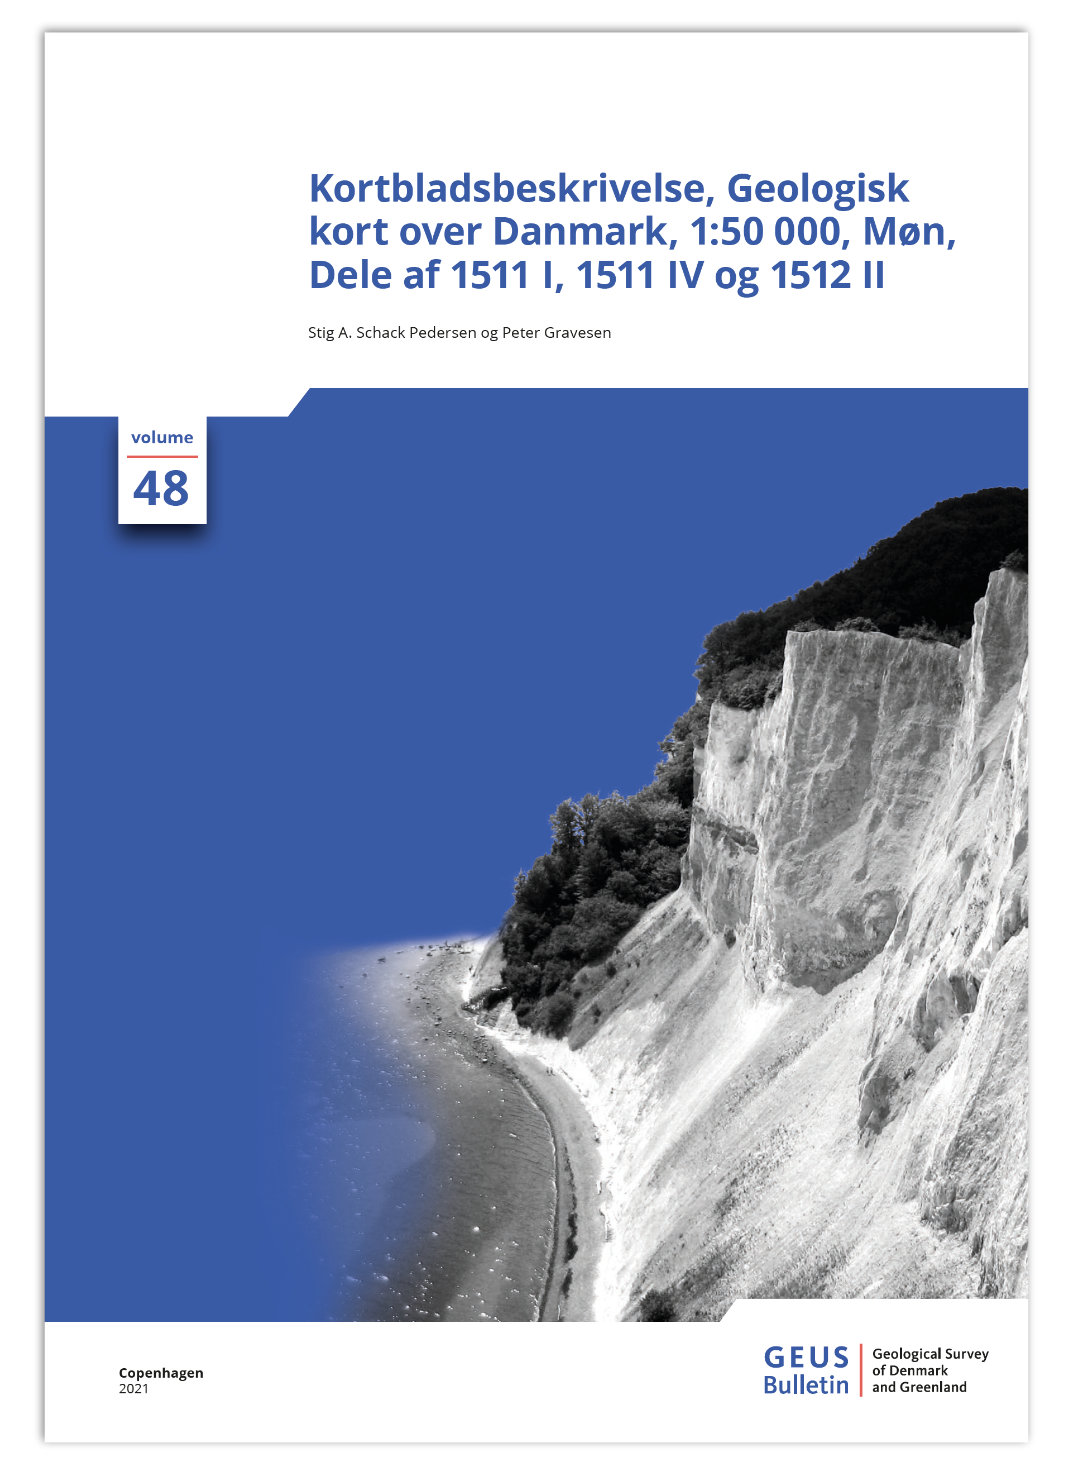 Volume 48 cover in Danish